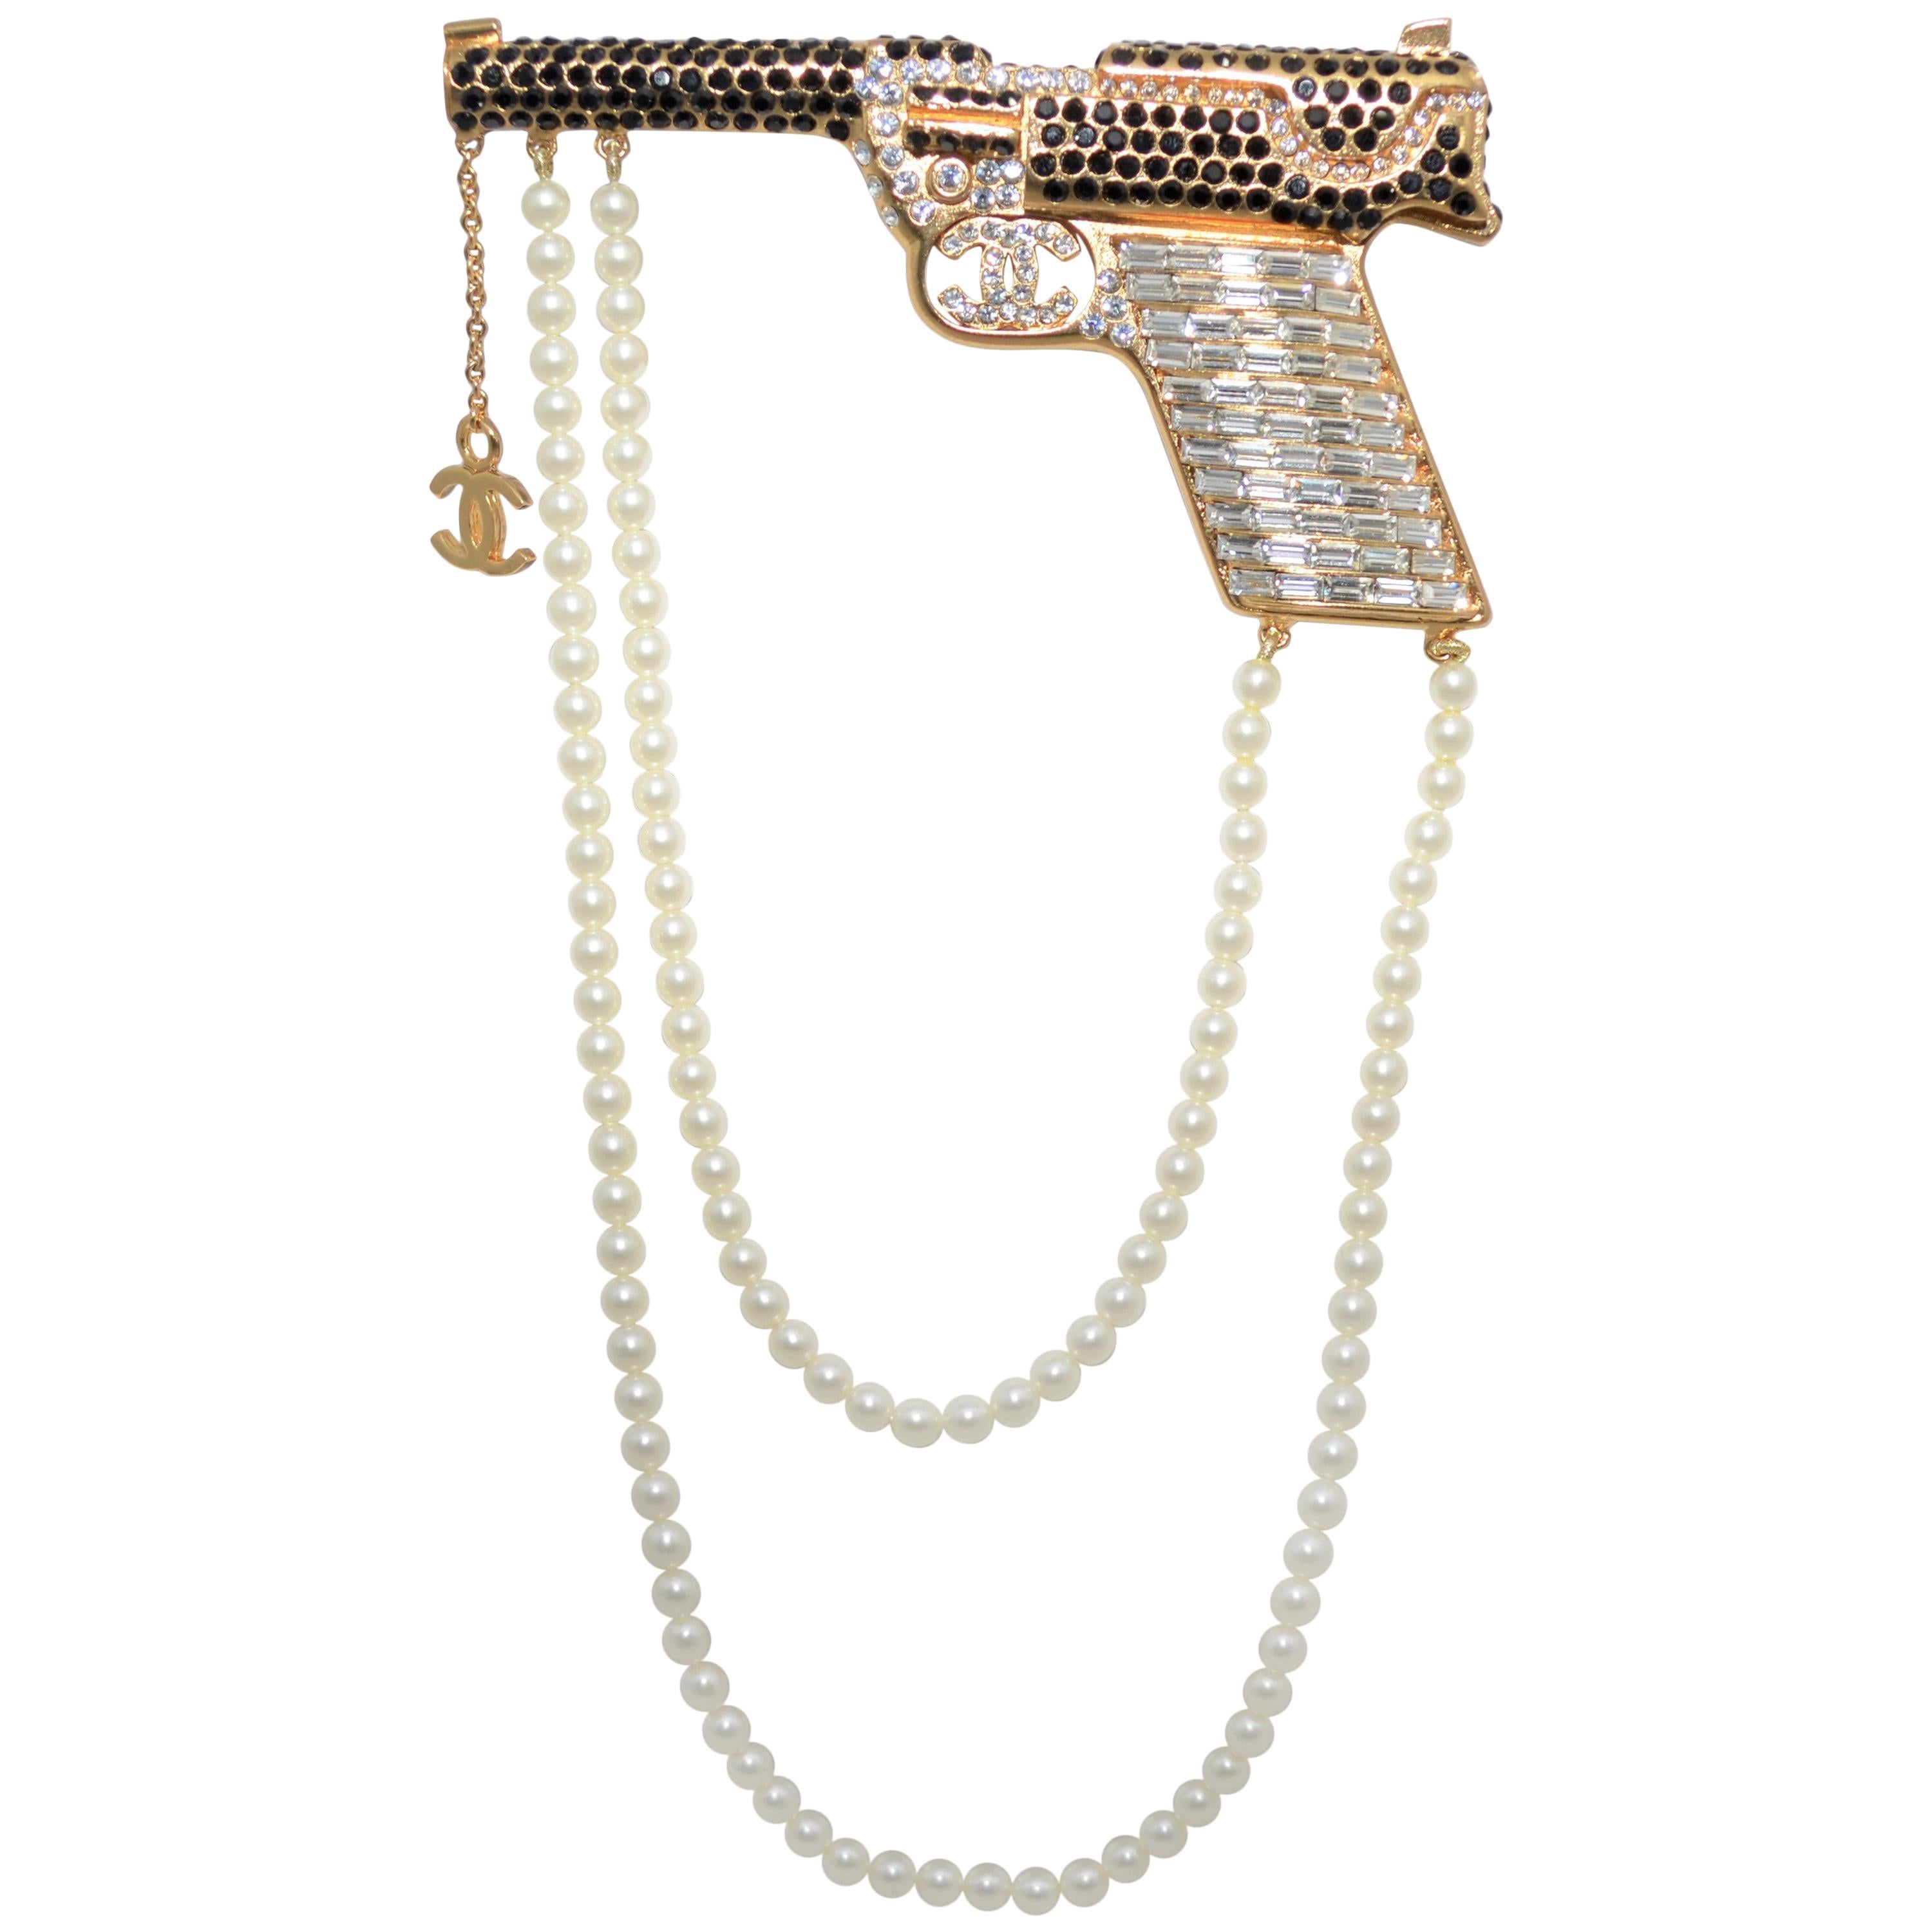 2001 A Chanel Pistolenbrosche mit Strasssteinen und Perlen